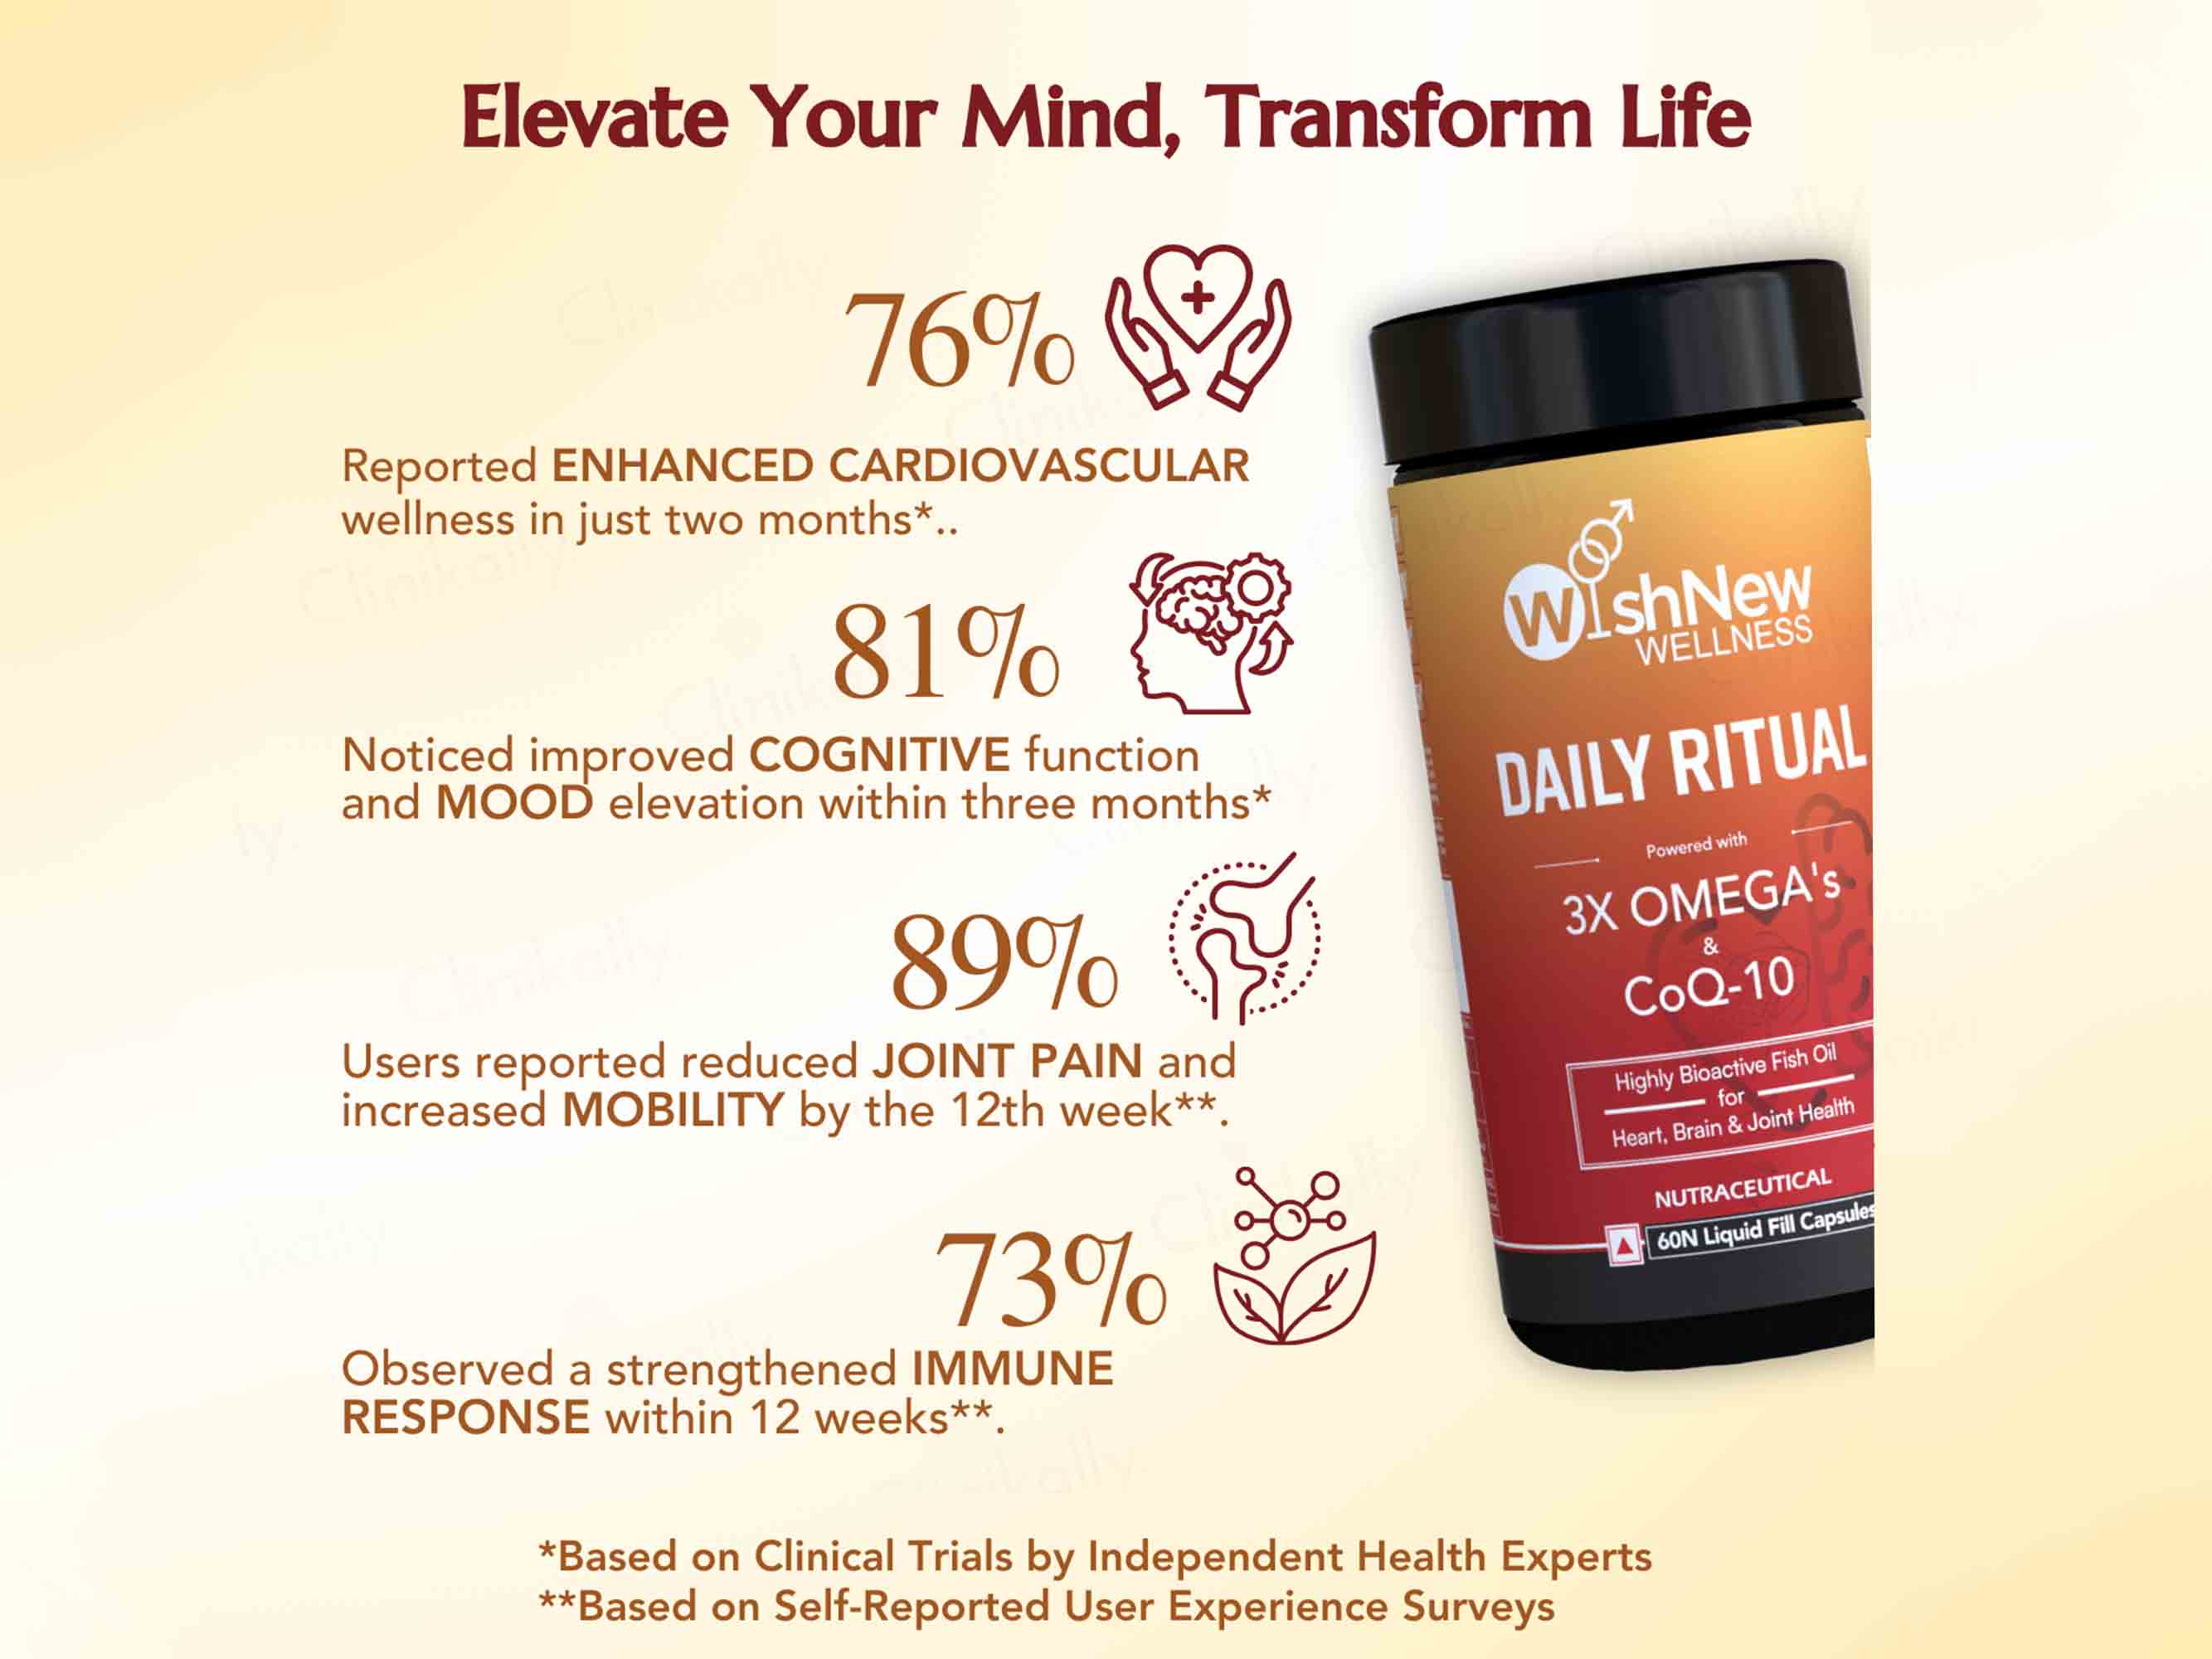 WishNew Wellness Daily Ritual 3X Omega's & CoQ-10 Capsule